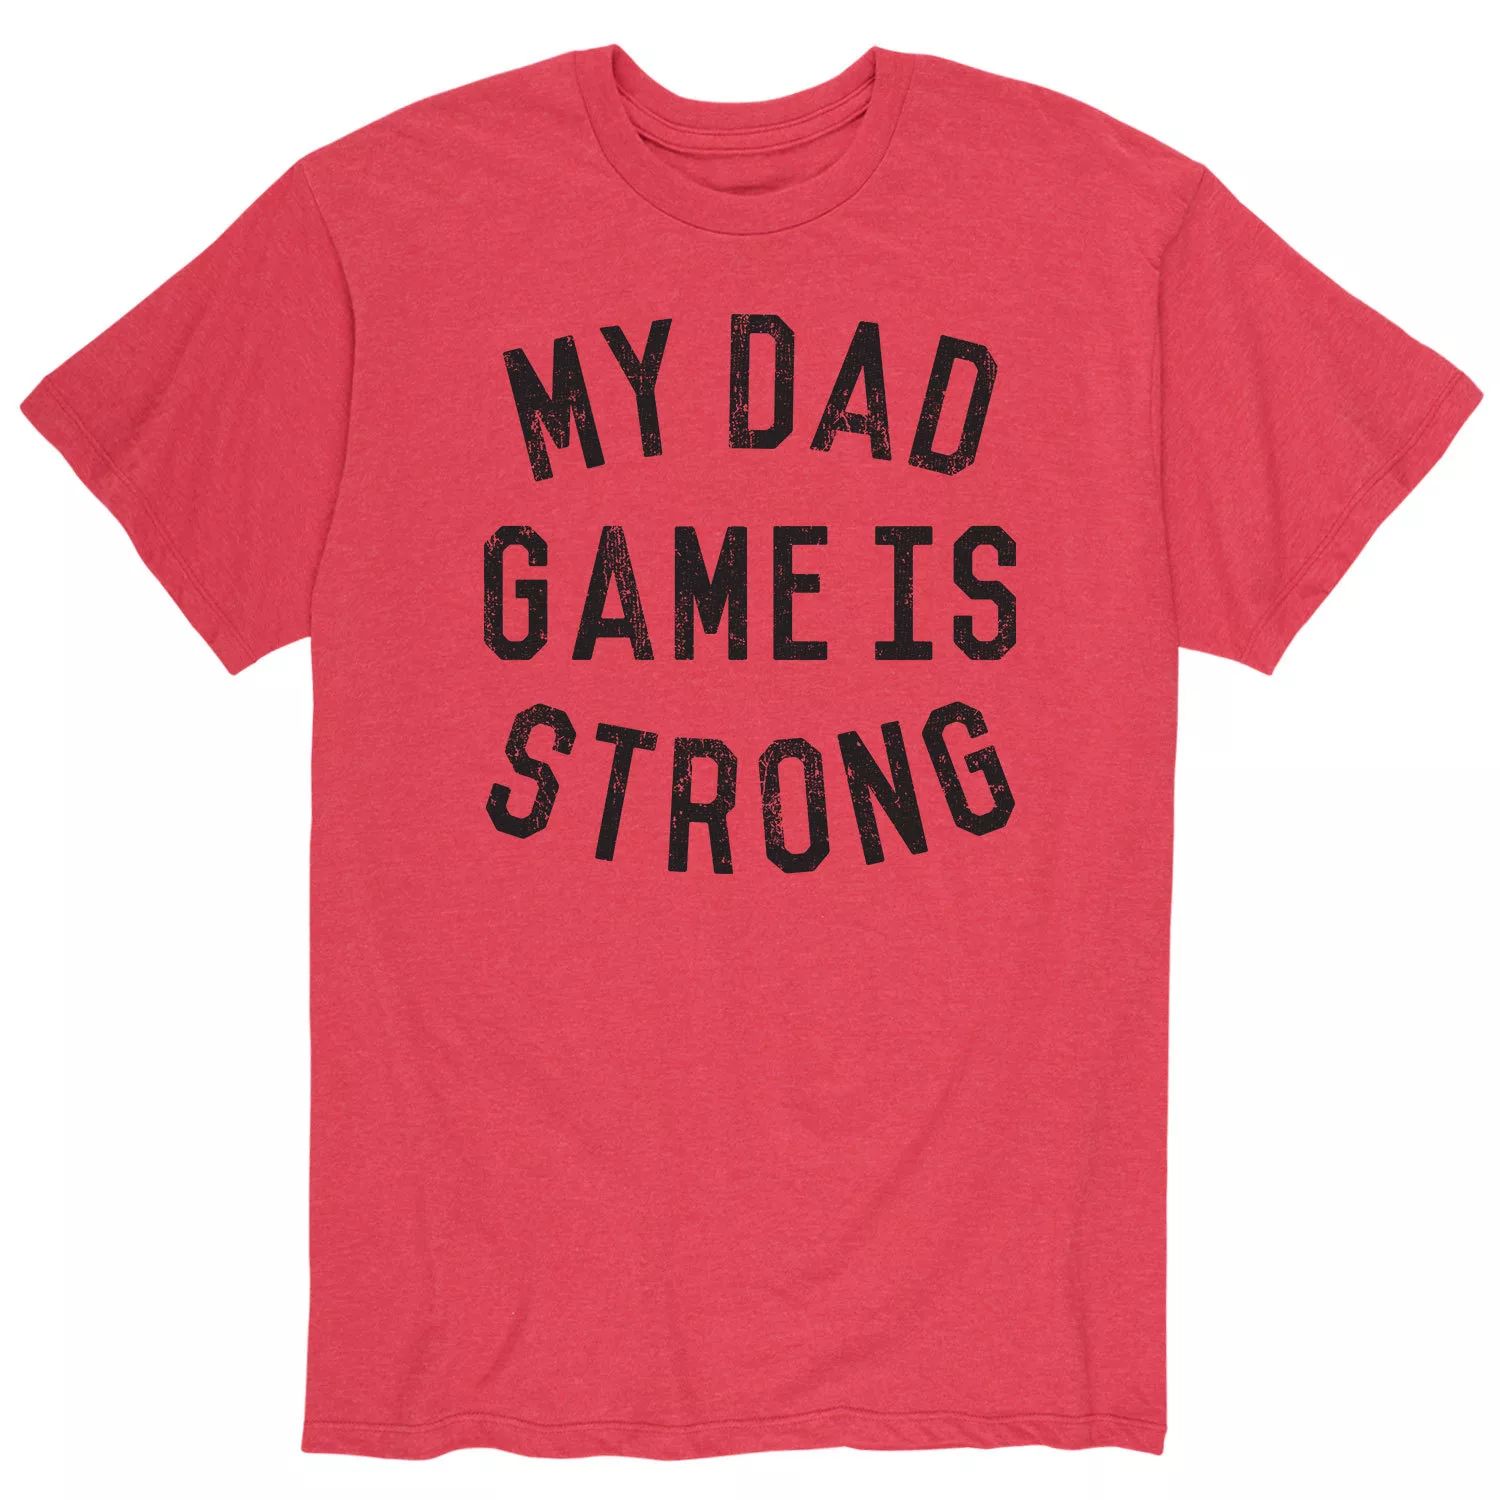 Мужская футболка для папы Game Licensed Character мужская футболка для папы game licensed character